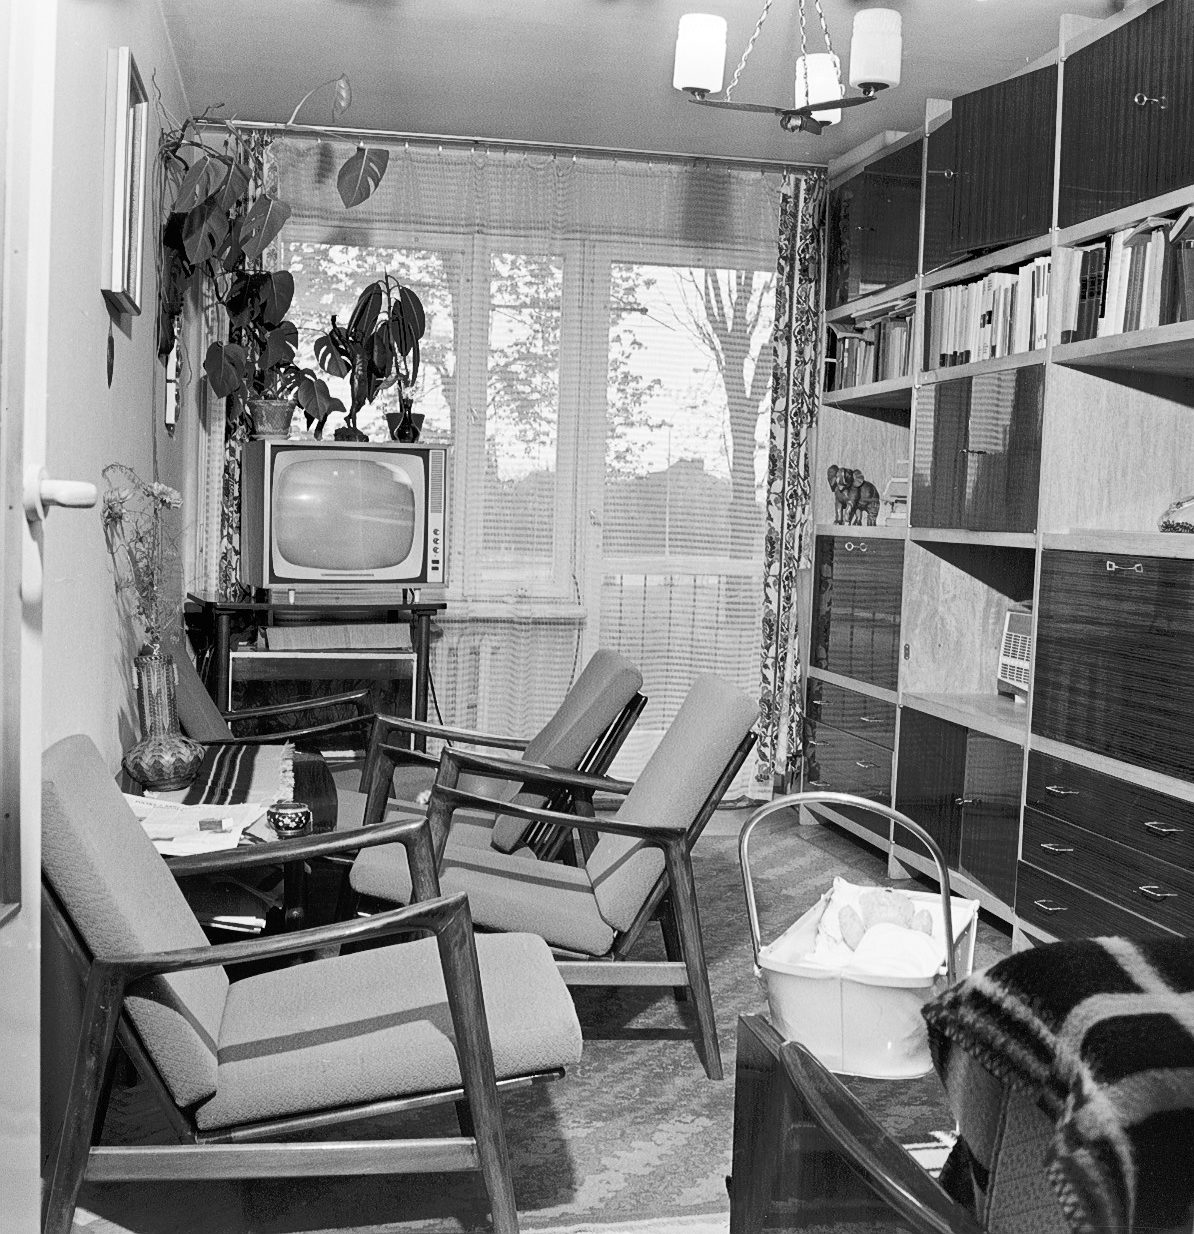 Wyposażenie wnętrz mieszkalnych na osiedlach wielkopłytowych, Lublin 1973-74 (źródło: materiały prasowe organizatora)